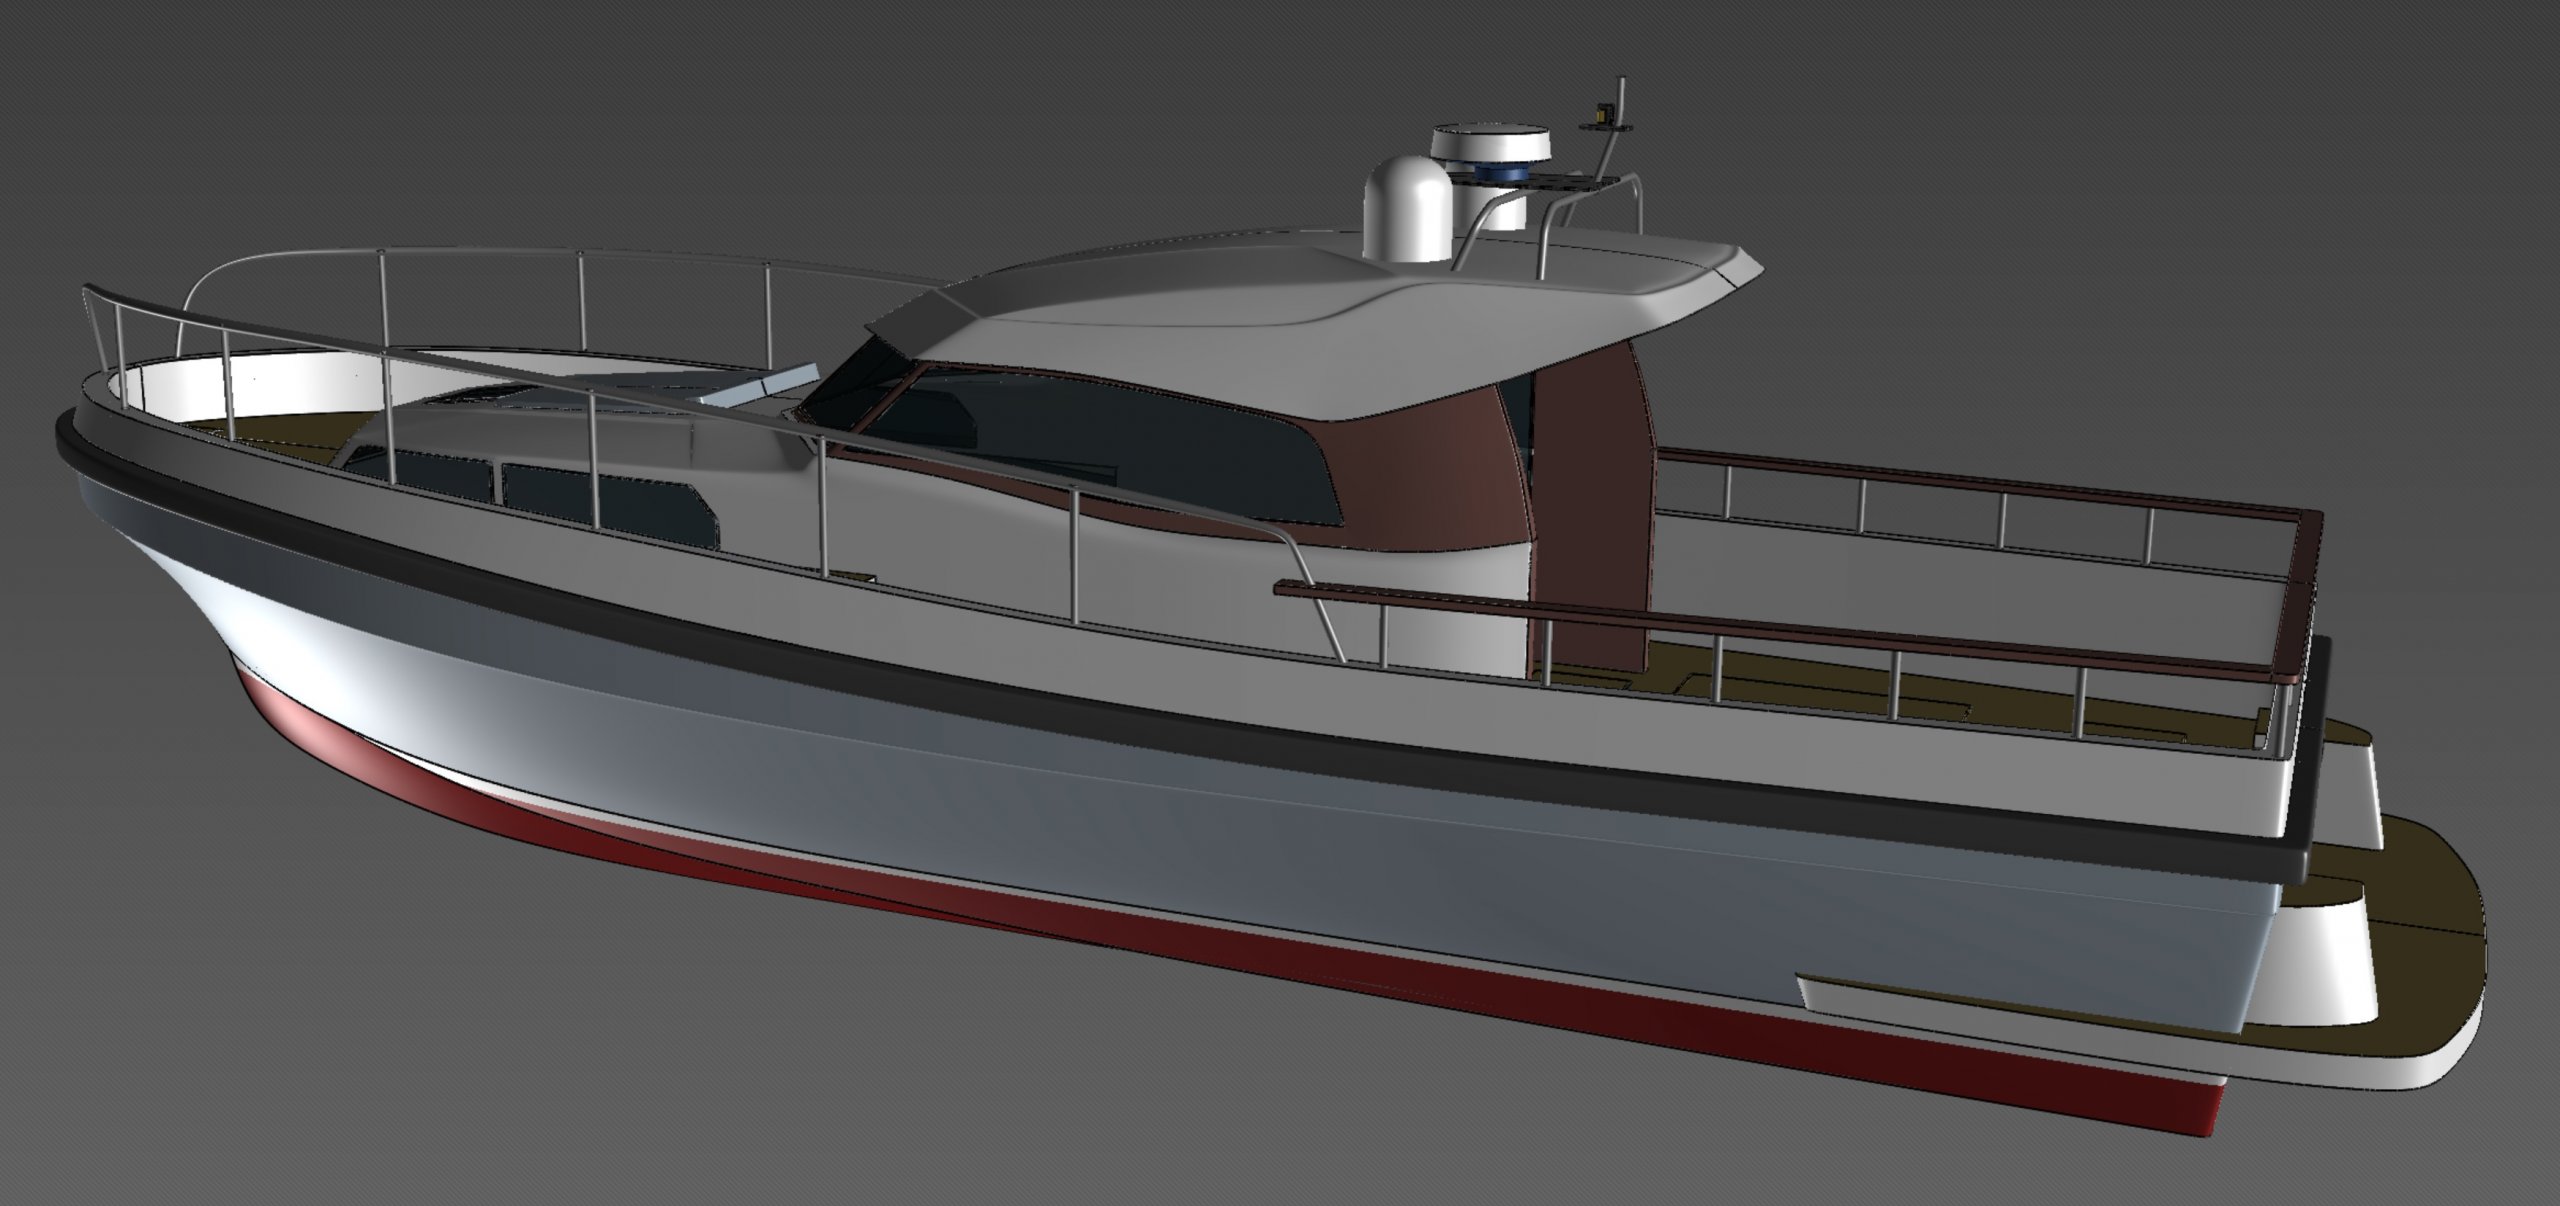 12 meter yacht models